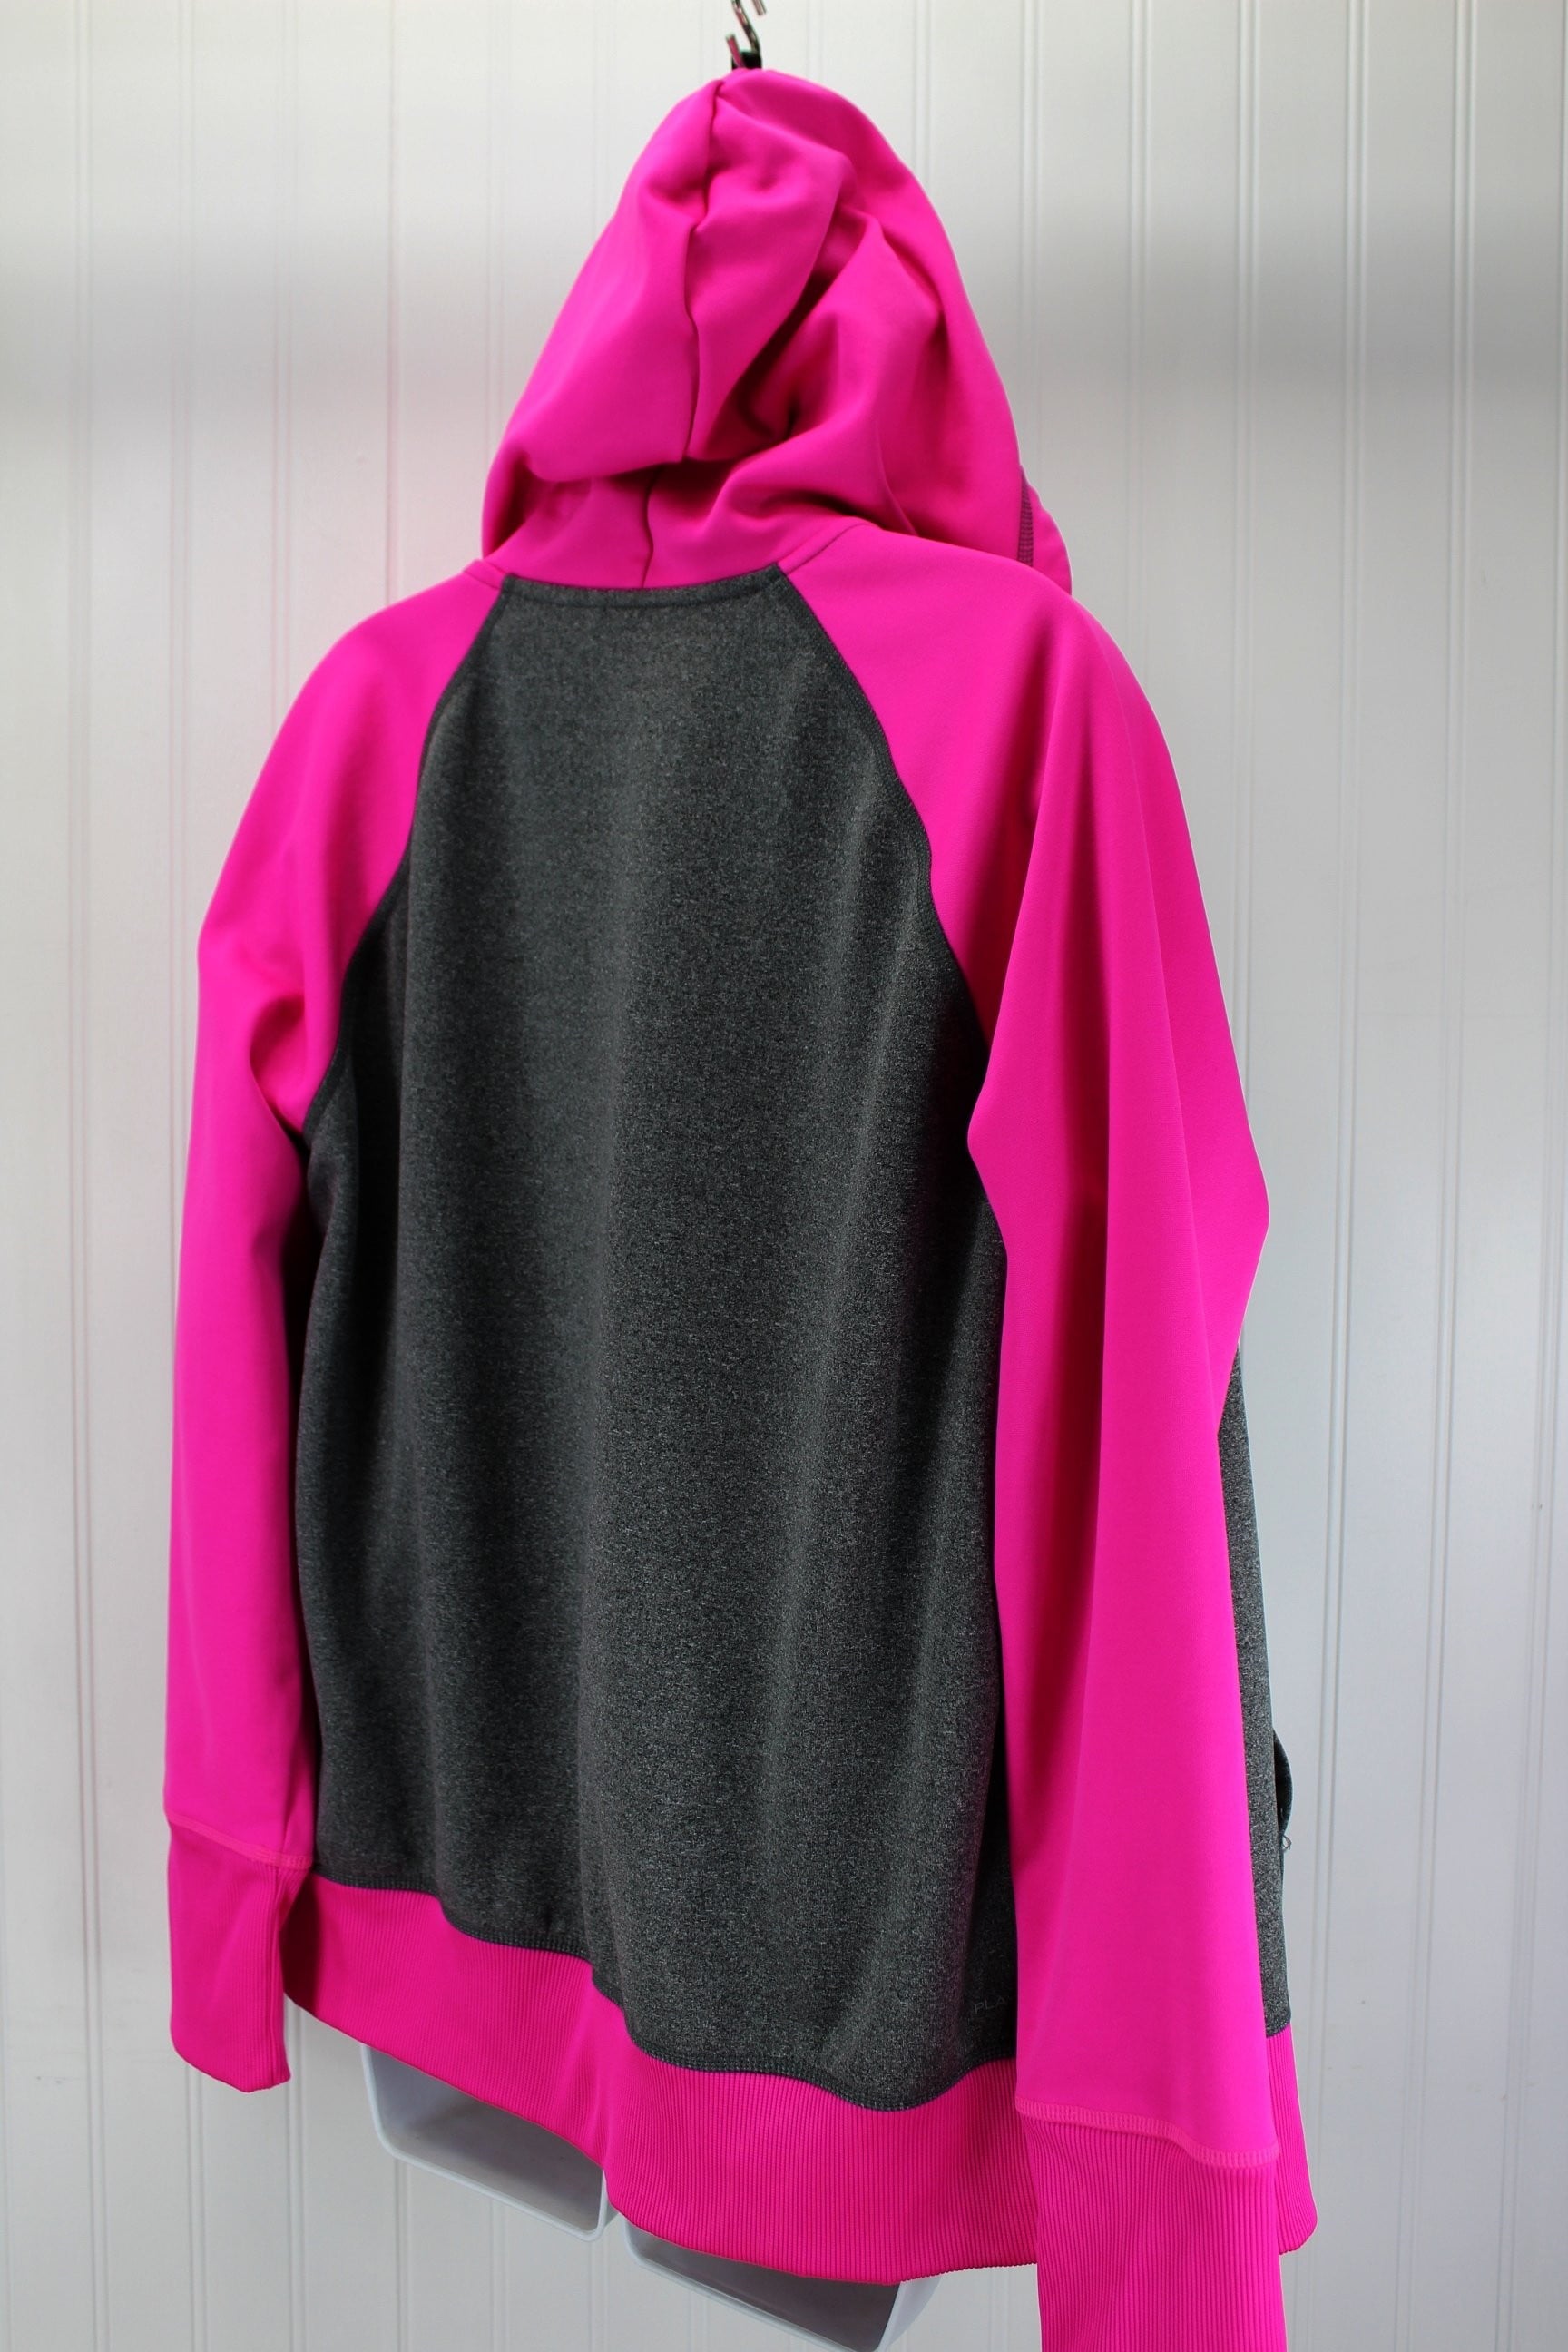 Reebok Activewear Womens Hoodie Jacket XL - Polyester Spandex Pink Grey very nice pre owned